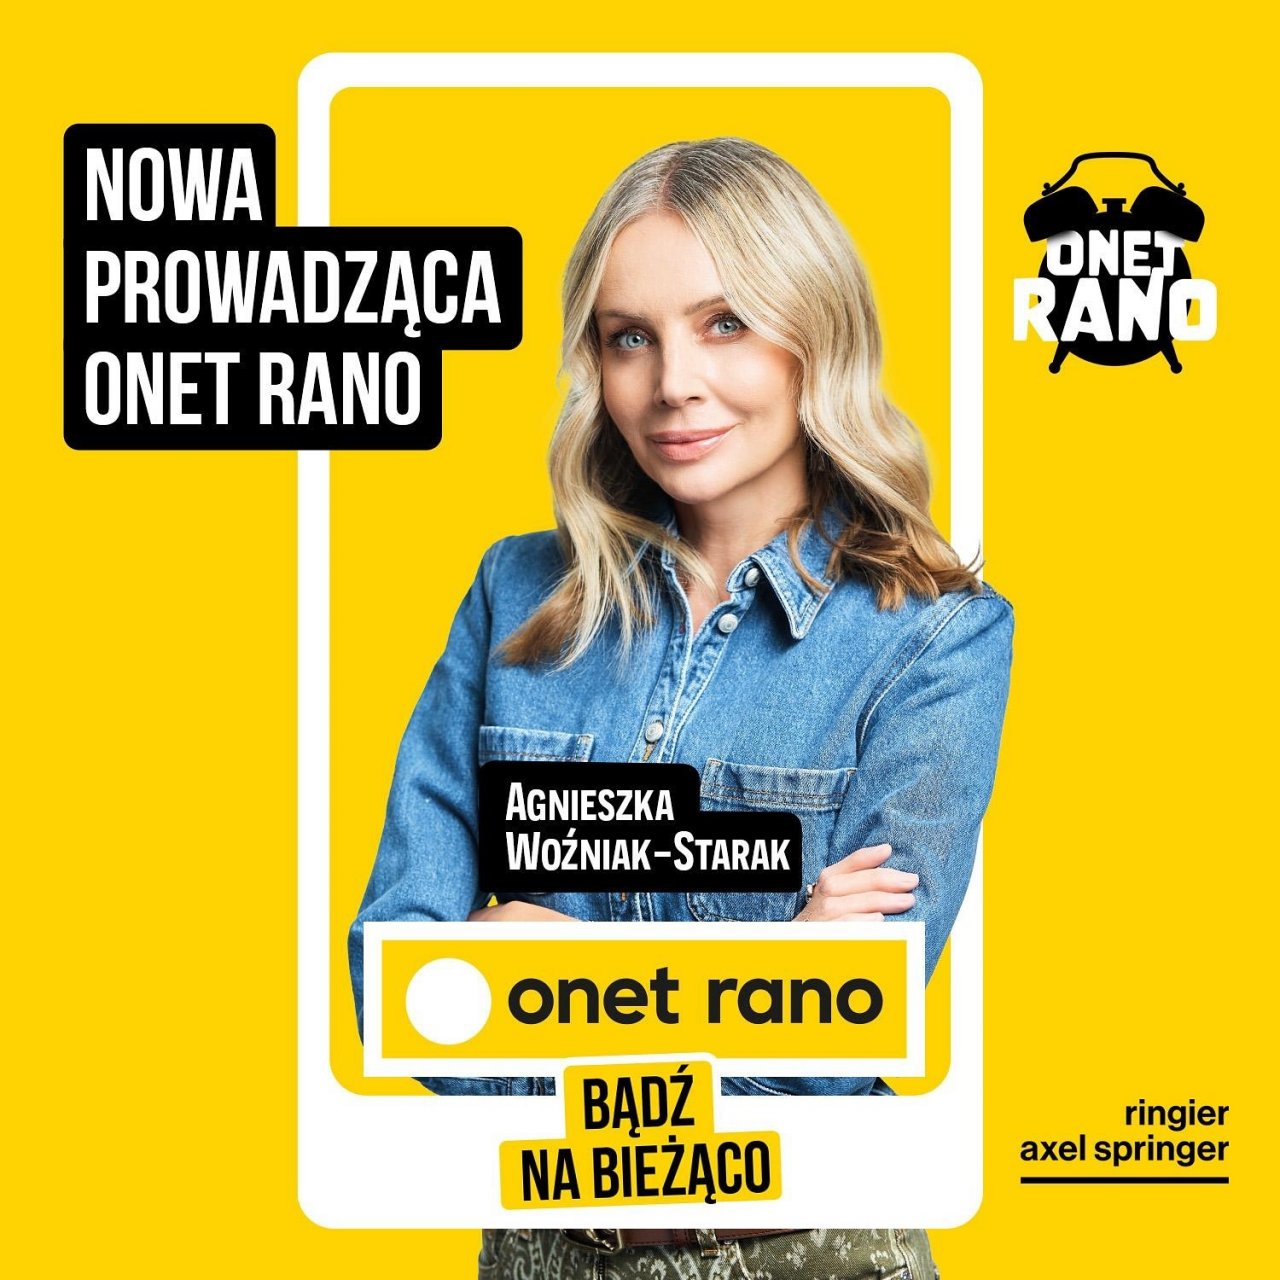 Agnieszka Woźniak-Starak w jeansowej kurtce na żółtym tle